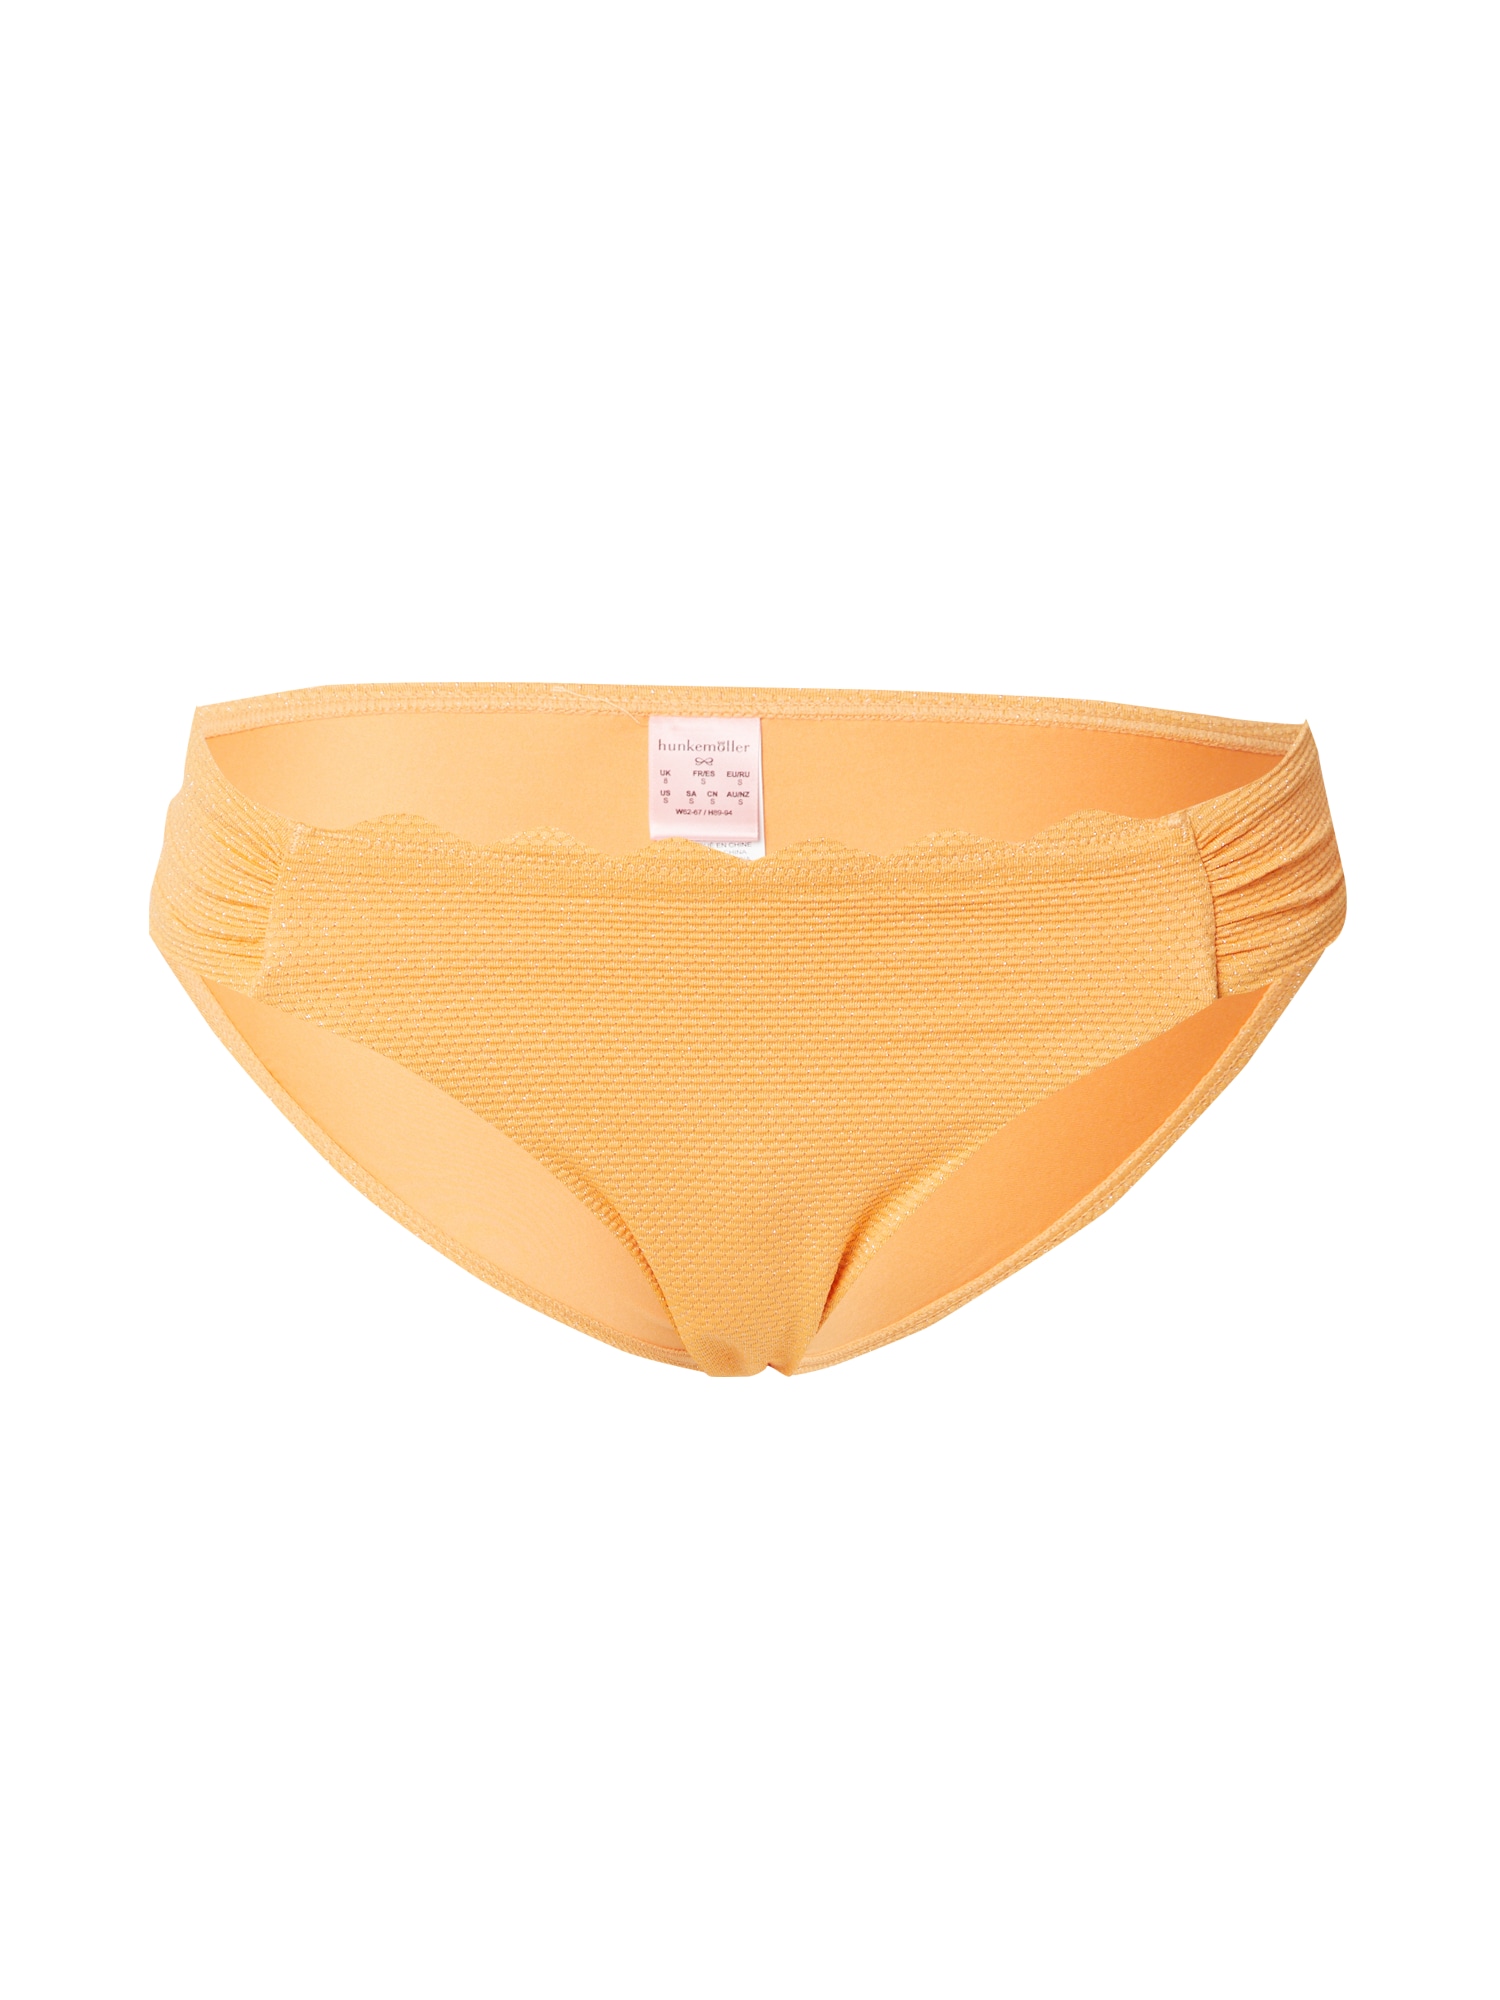 Hunkemöller Bikini nadrágok  arany / narancs